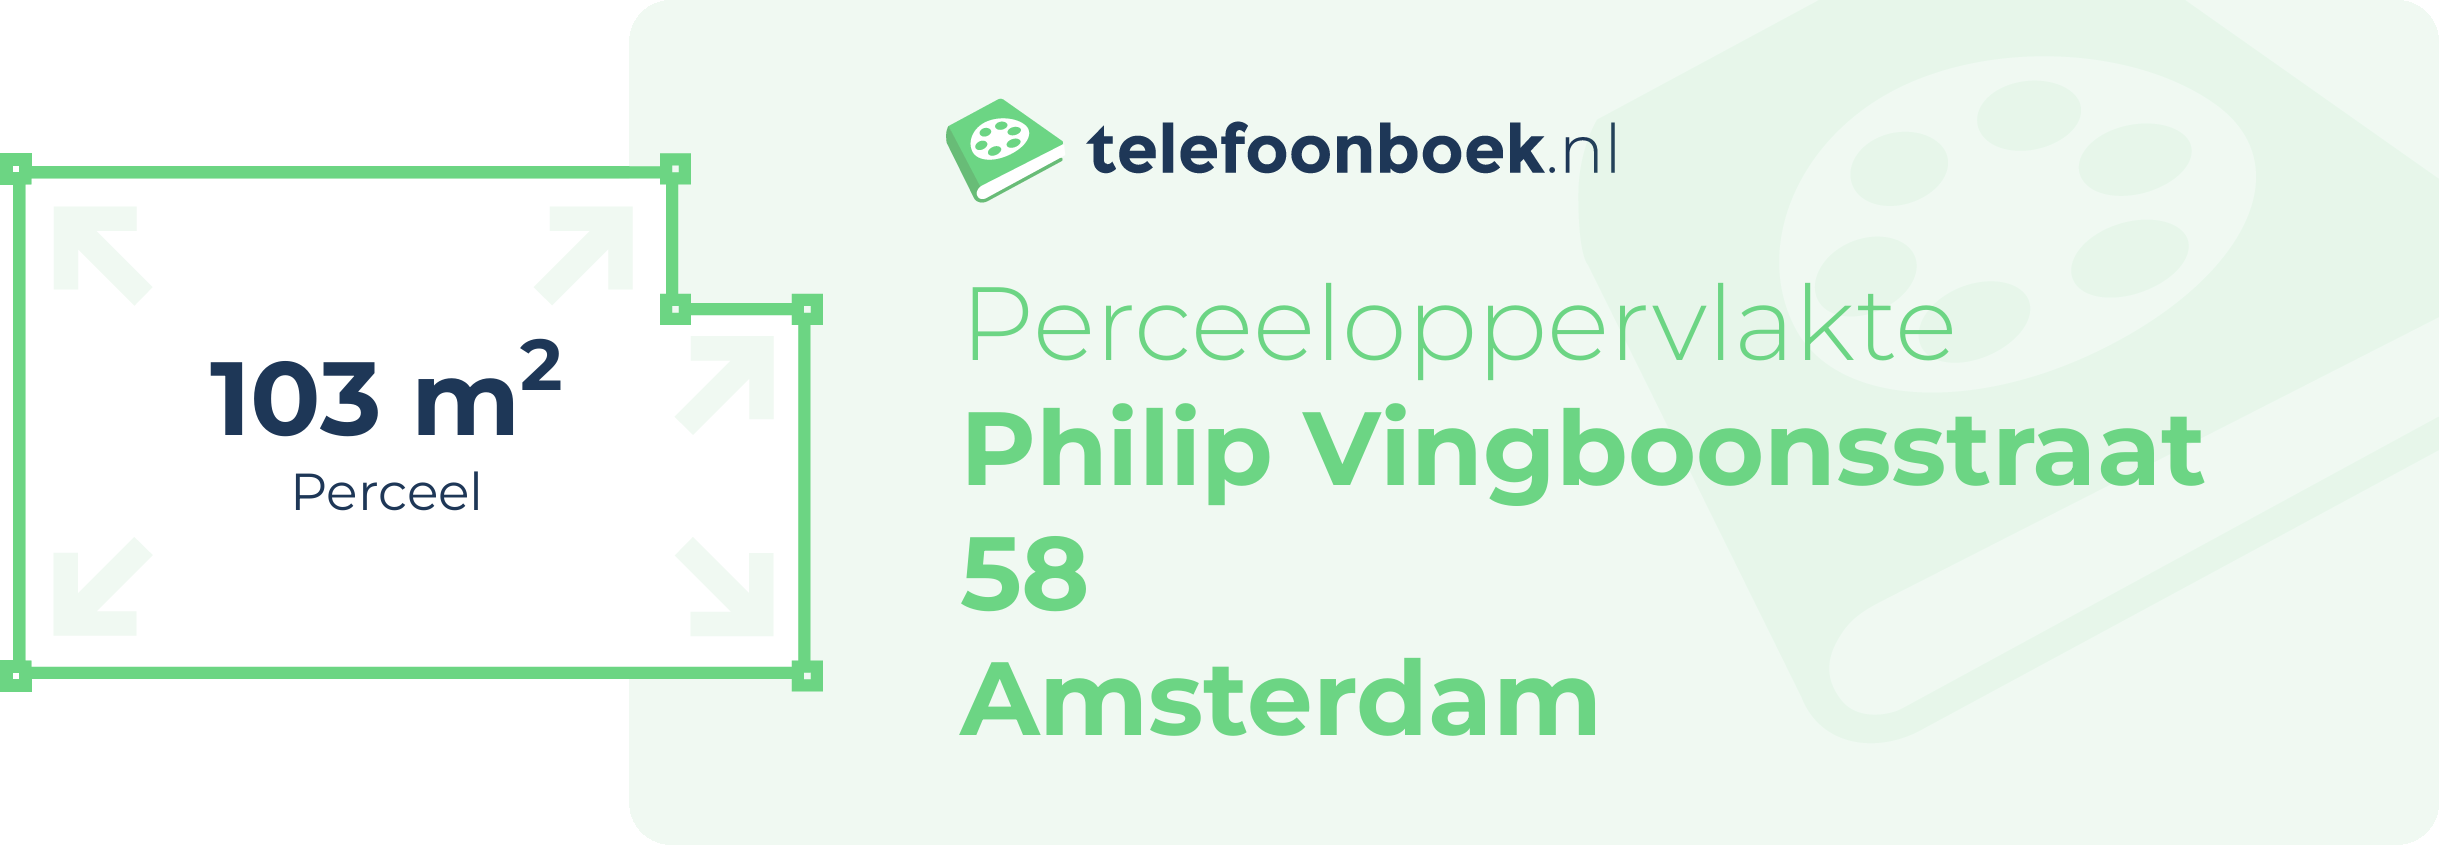 Perceeloppervlakte Philip Vingboonsstraat 58 Amsterdam